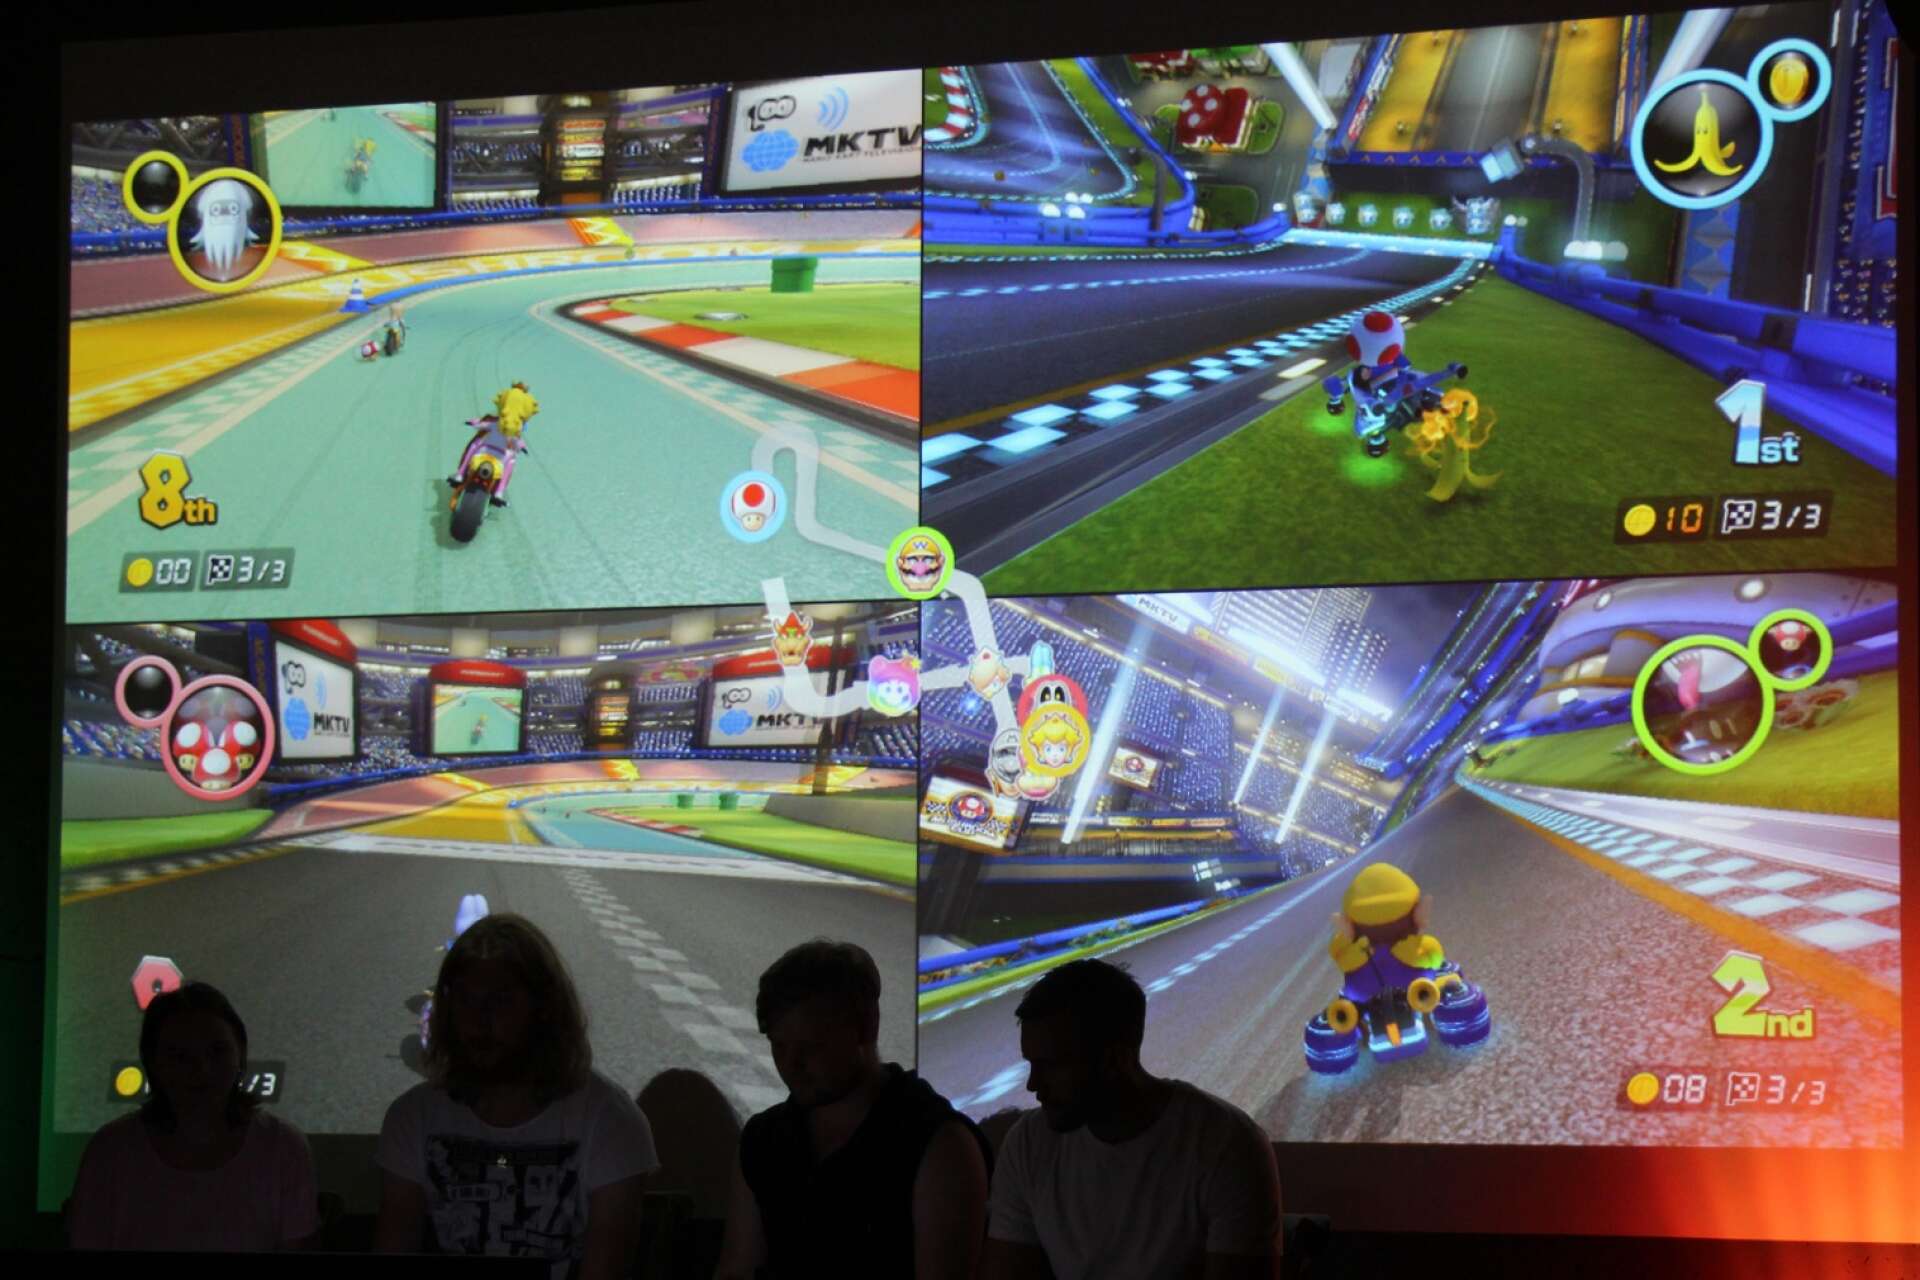 På stadsbiblioteket är det tv-spelsturnering i Mario Kart. (Arkivfoto)